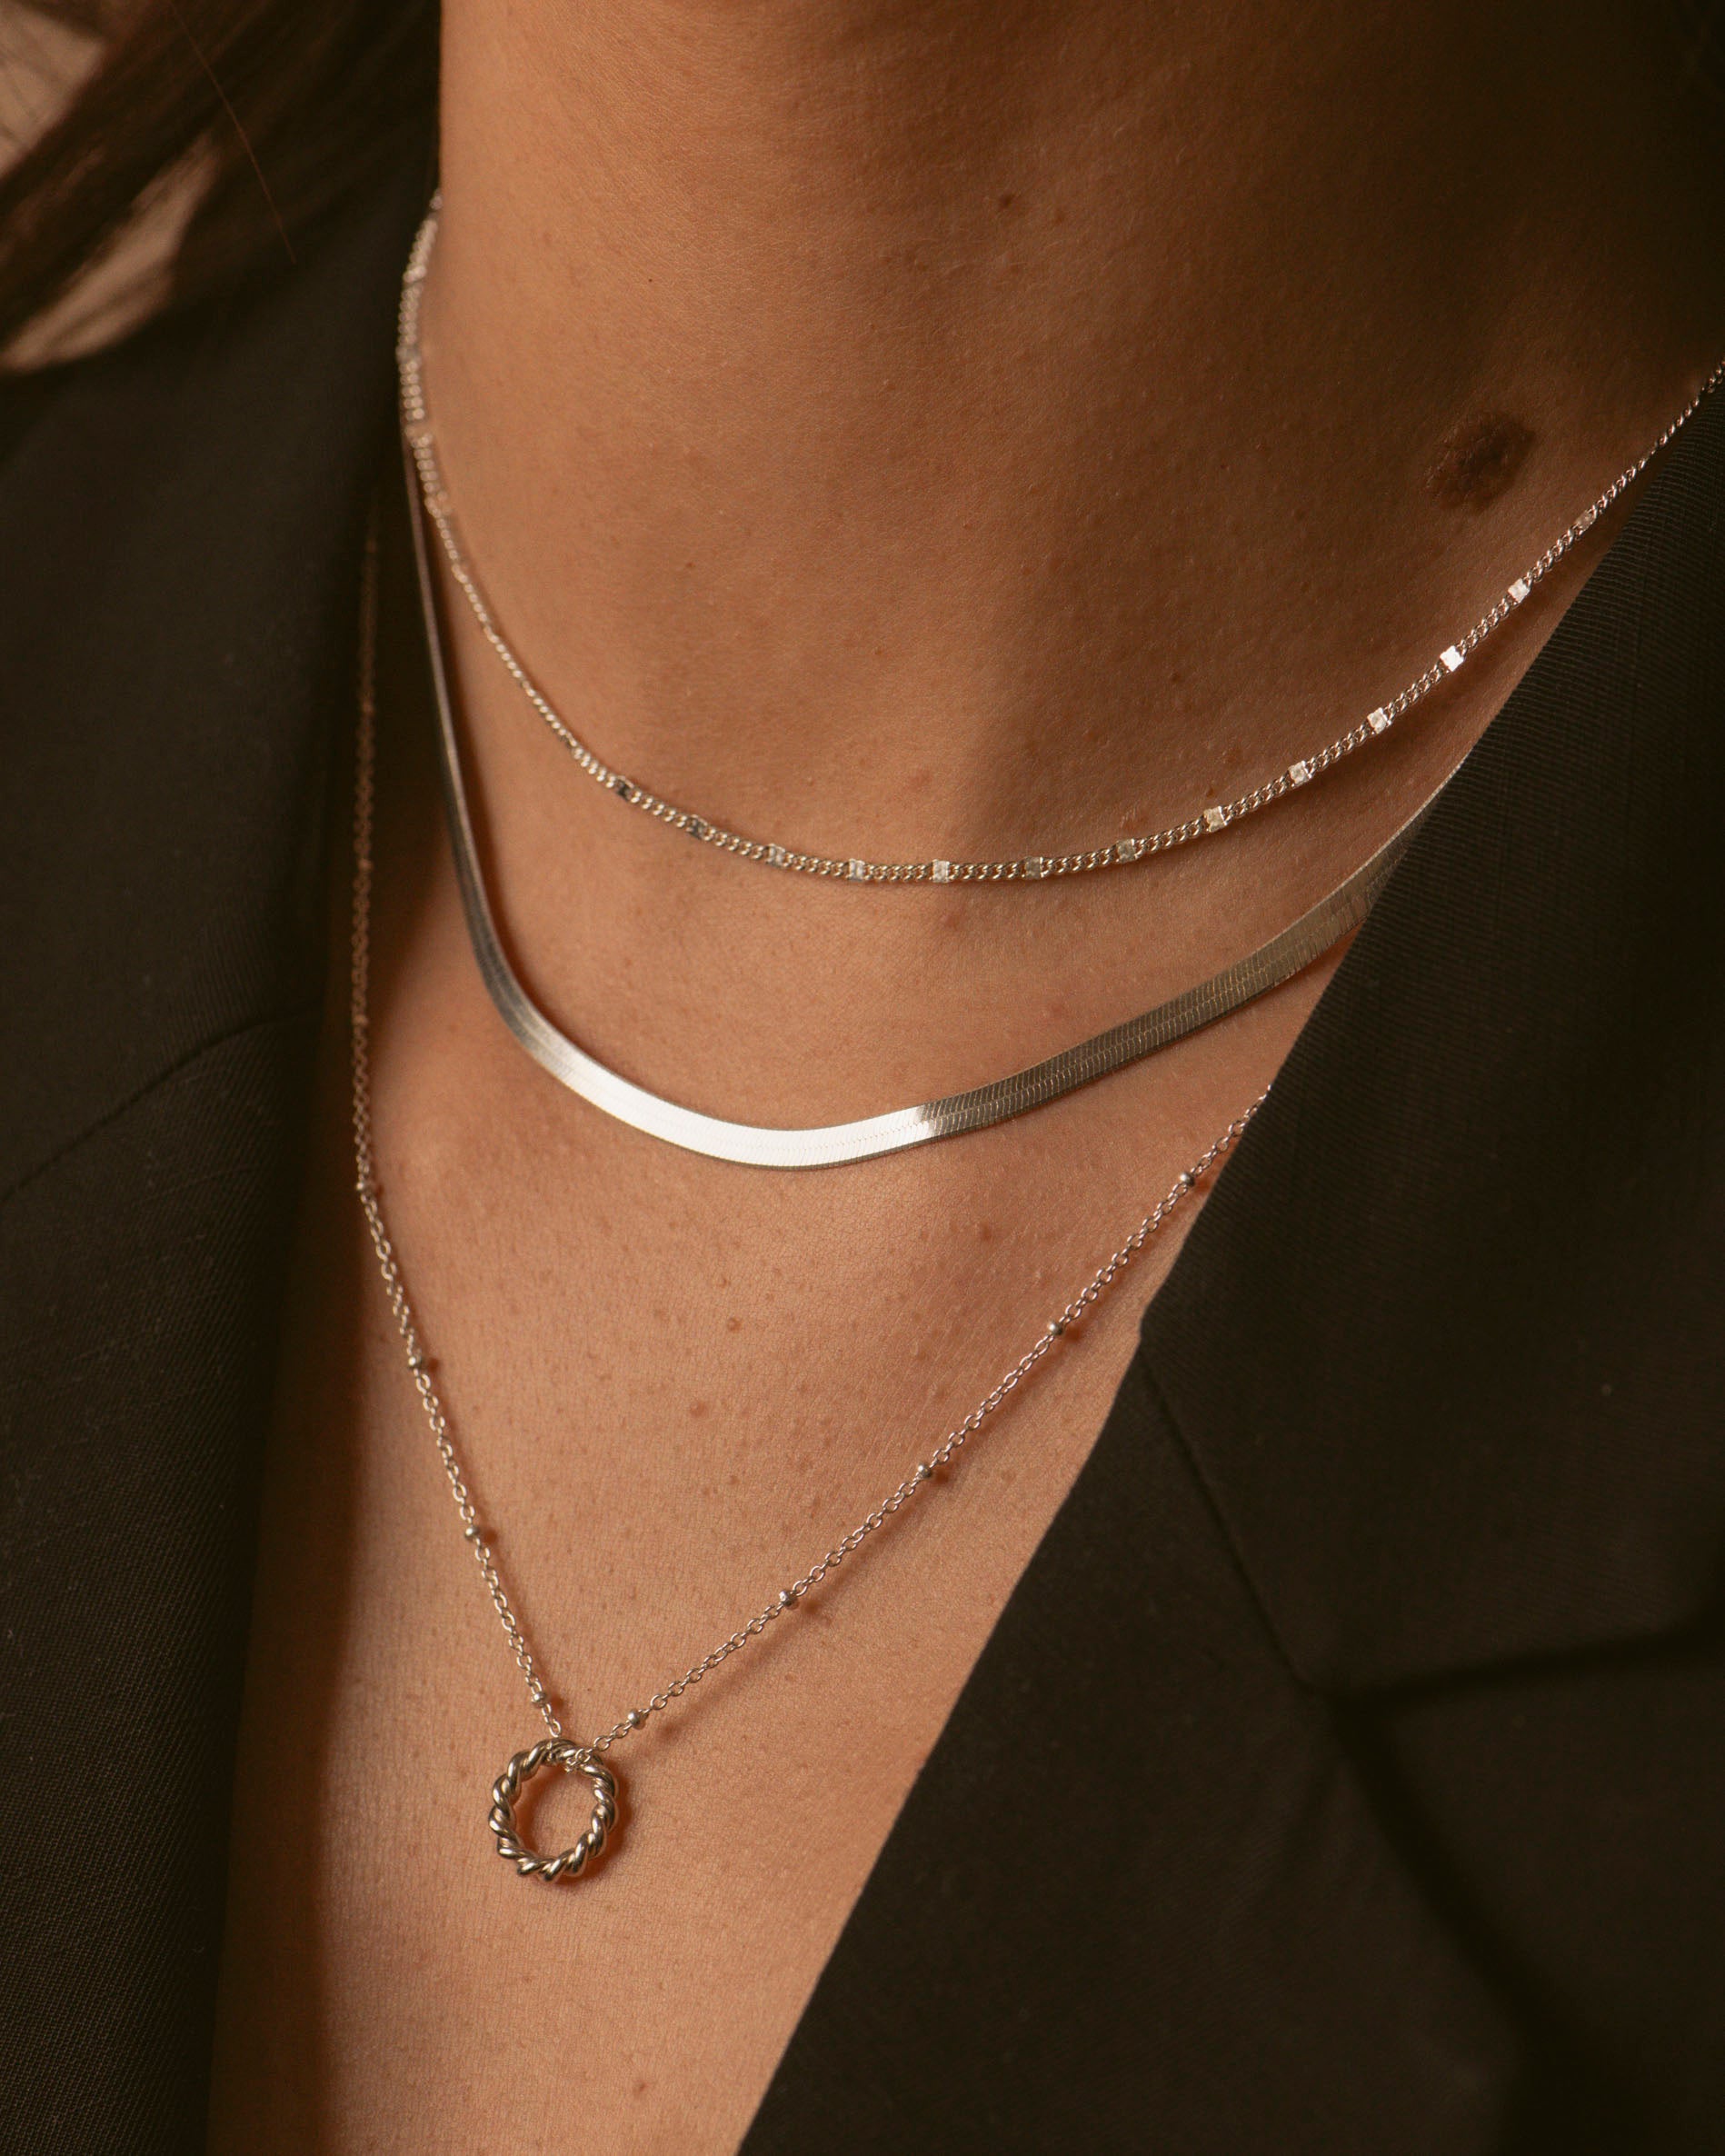 Association de trois colliers en argent massif 925, composée d'un collier ras de cou de type gourmette, d'un collier en chaîne plate, et d'un collier en chaîne boule avec un pendentif en anneau torsadé, made in France.